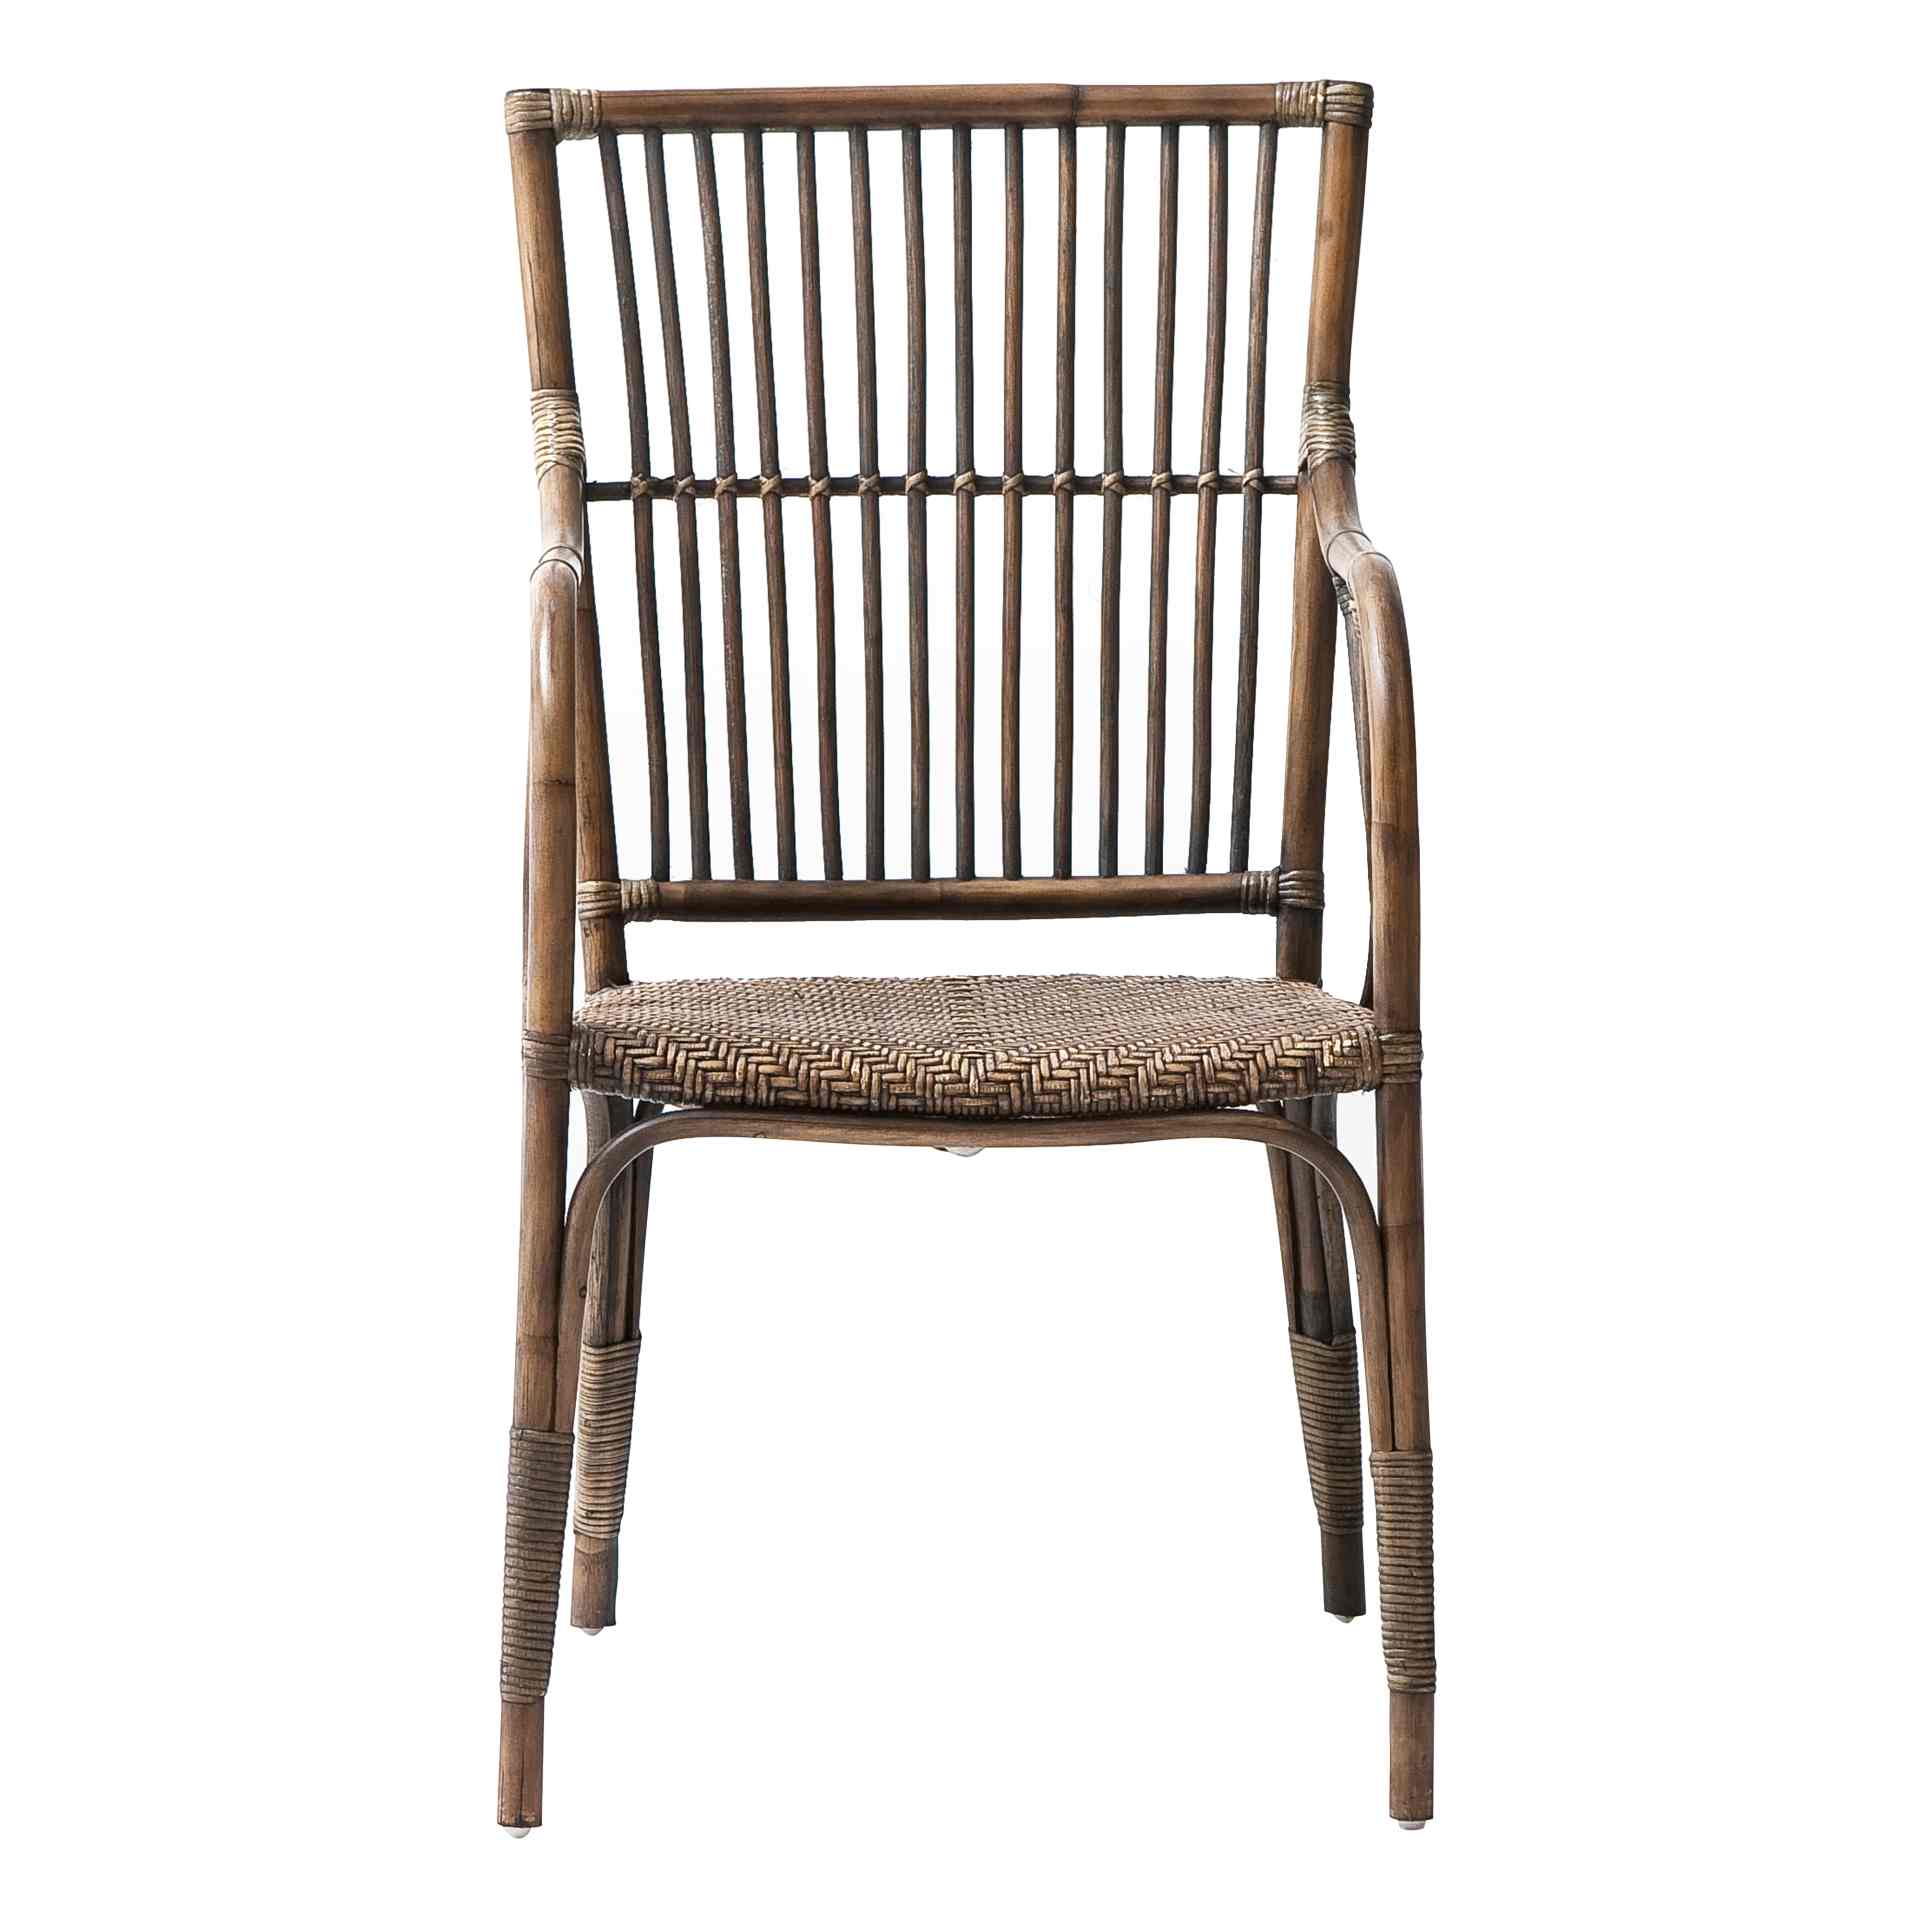 Der Armlehnstuhl Duke überzeugt mit seinem Landhaus Stil. Gefertigt wurde er aus Rattan, welches einen braunen Farbton besitzt. Der Stuhl verfügt über eine Armlehne und ist im 2er-Set erhältlich. Die Sitzhöhe beträgt beträgt 46 cm.